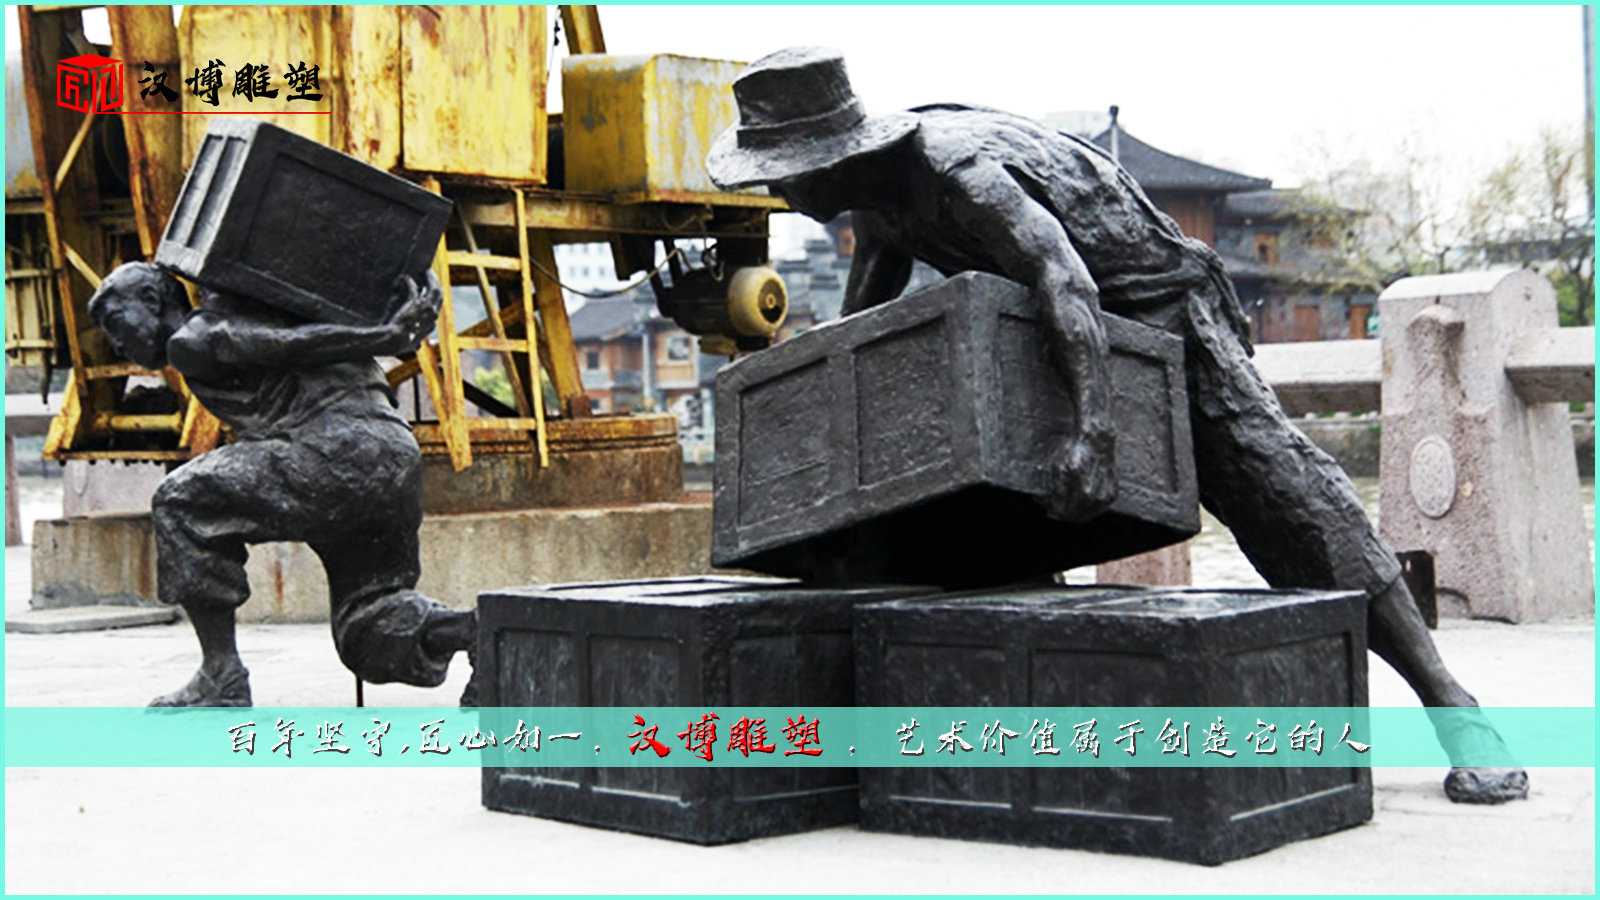 码头工人雕像,搬运工人雕塑,人物铜雕